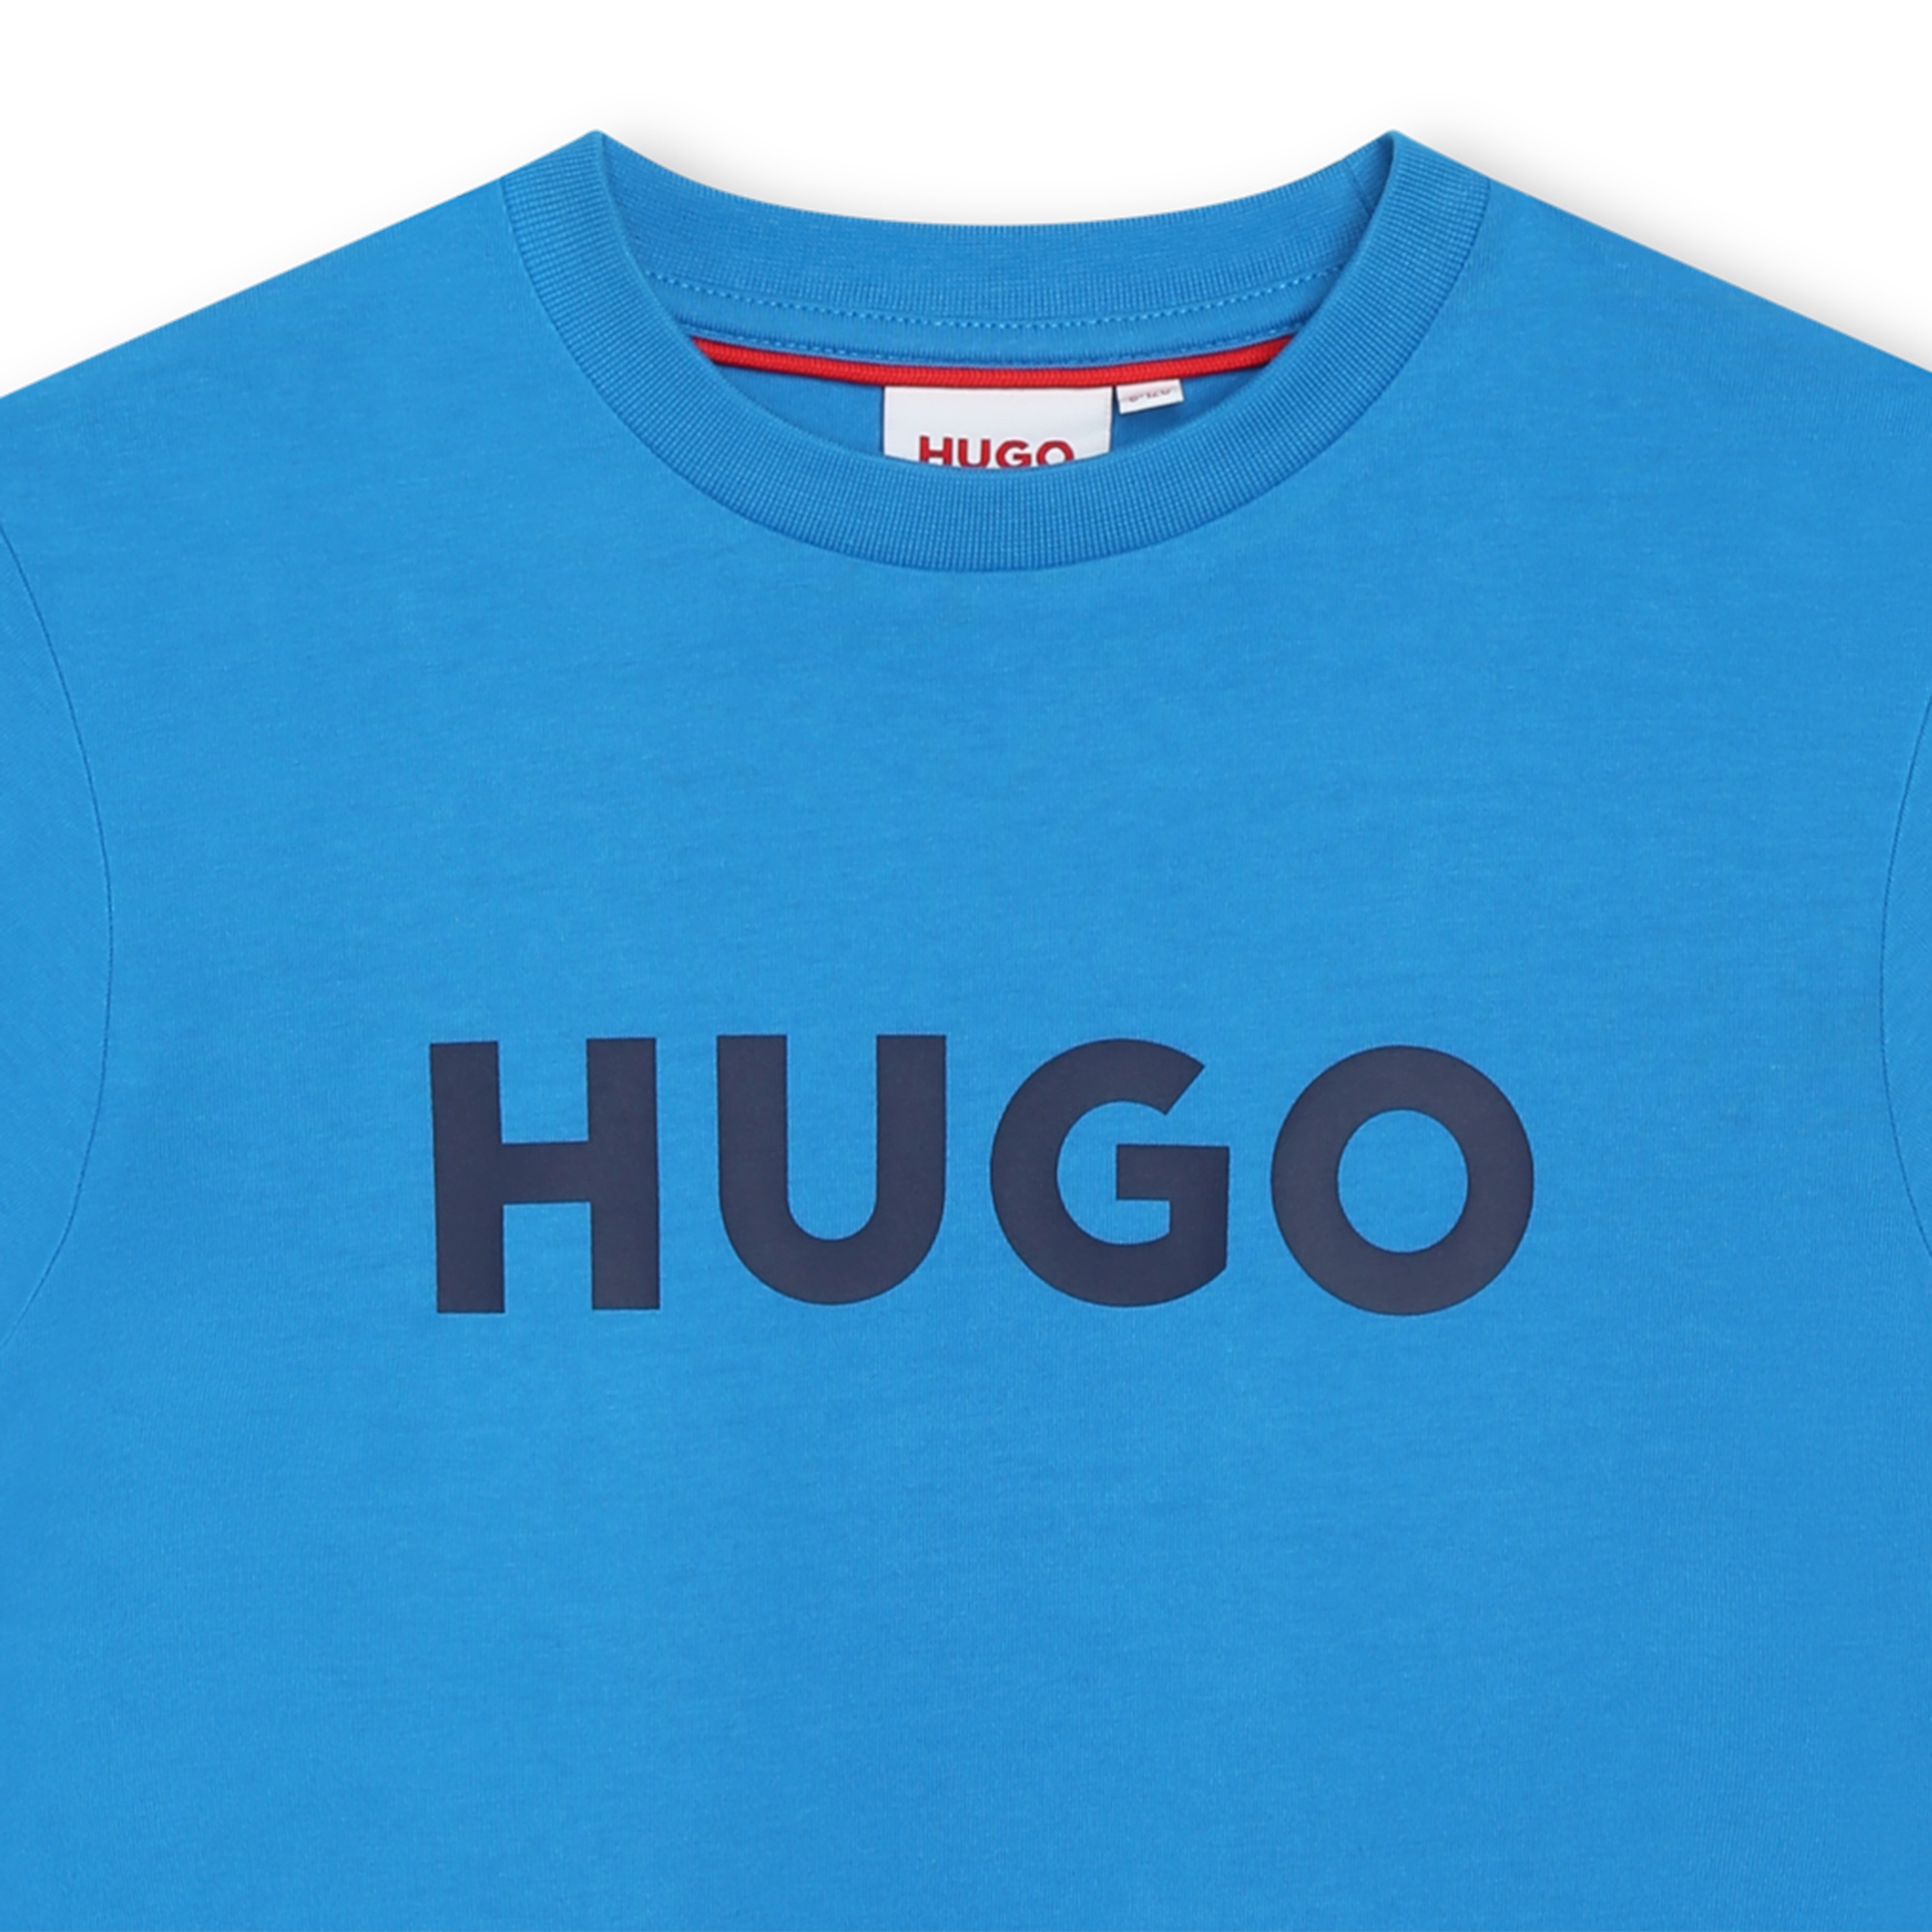 Zweifarbiges Baumwoll-Shirt HUGO Für JUNGE